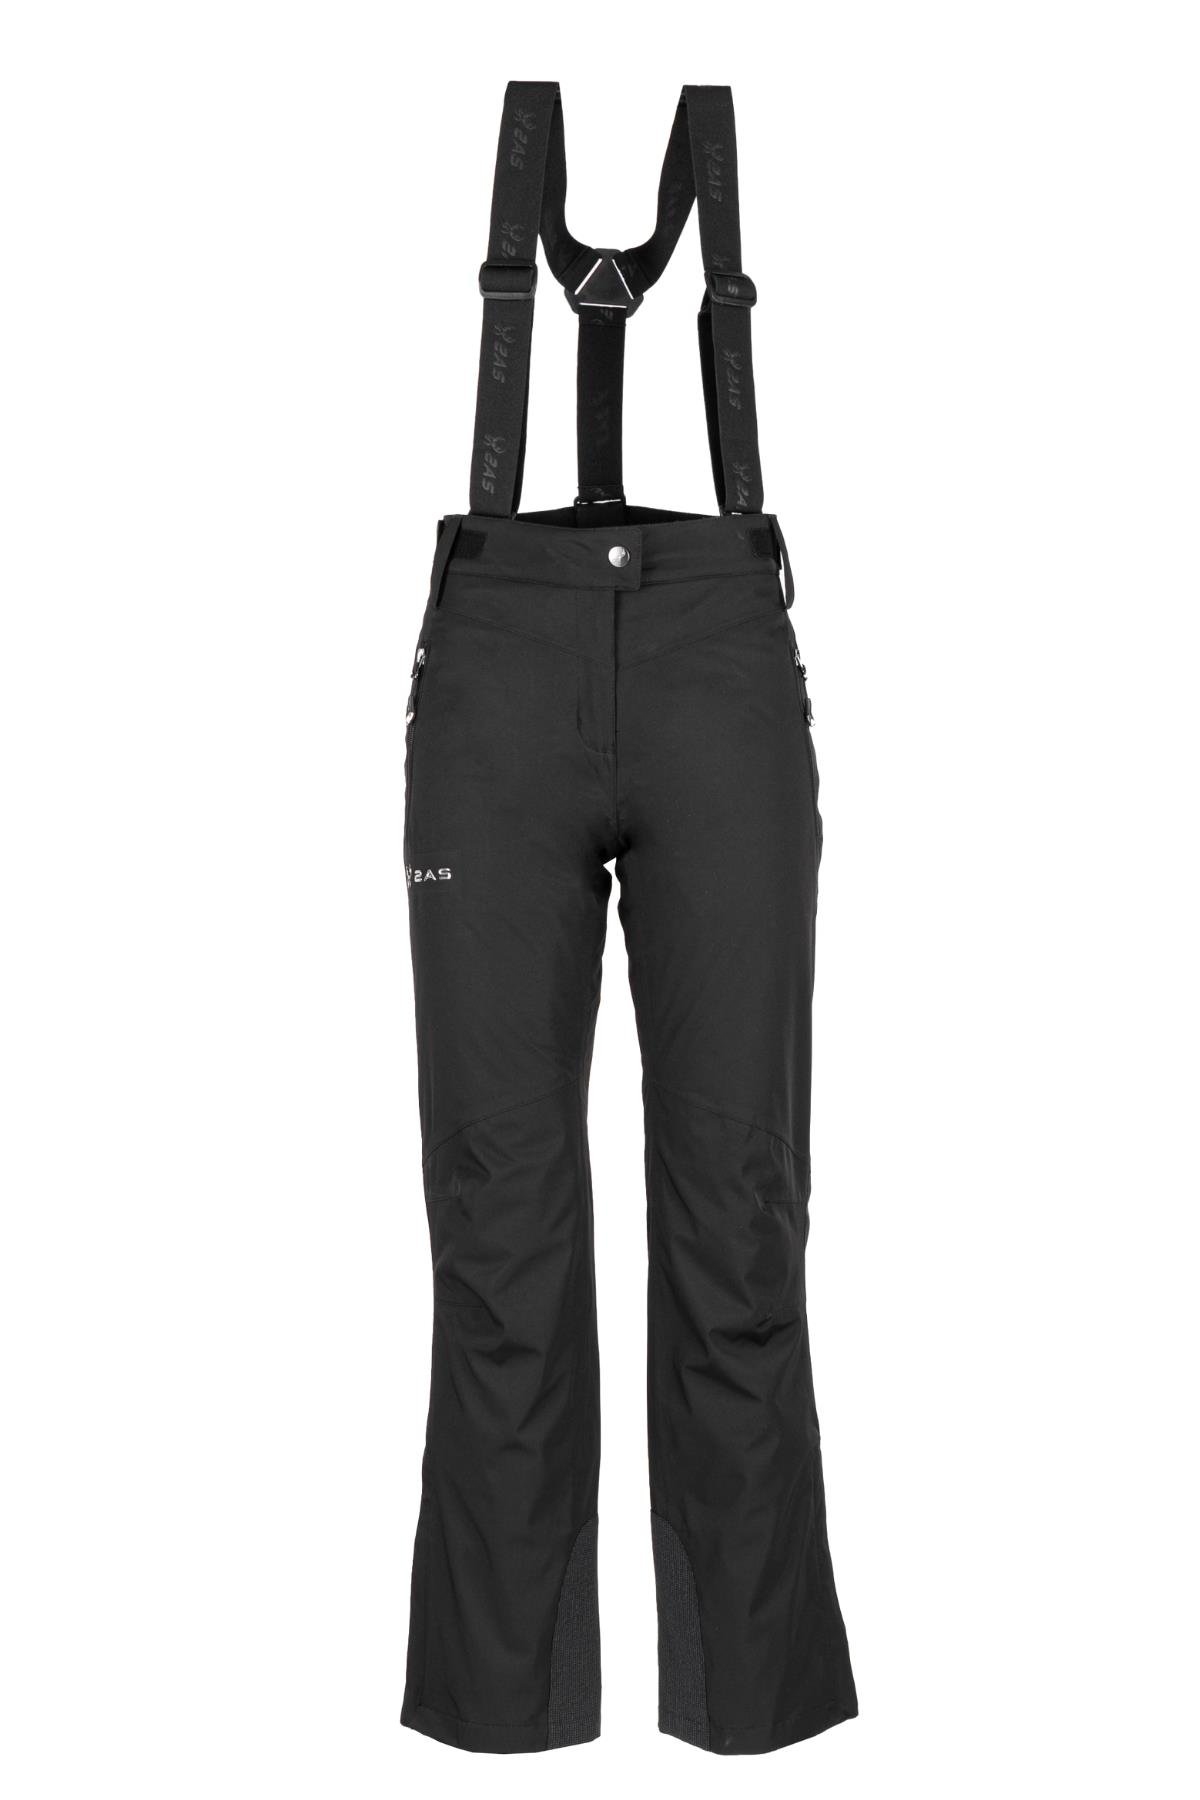 2AS 2 asama Kadın Kayak Pantolonu Siyah